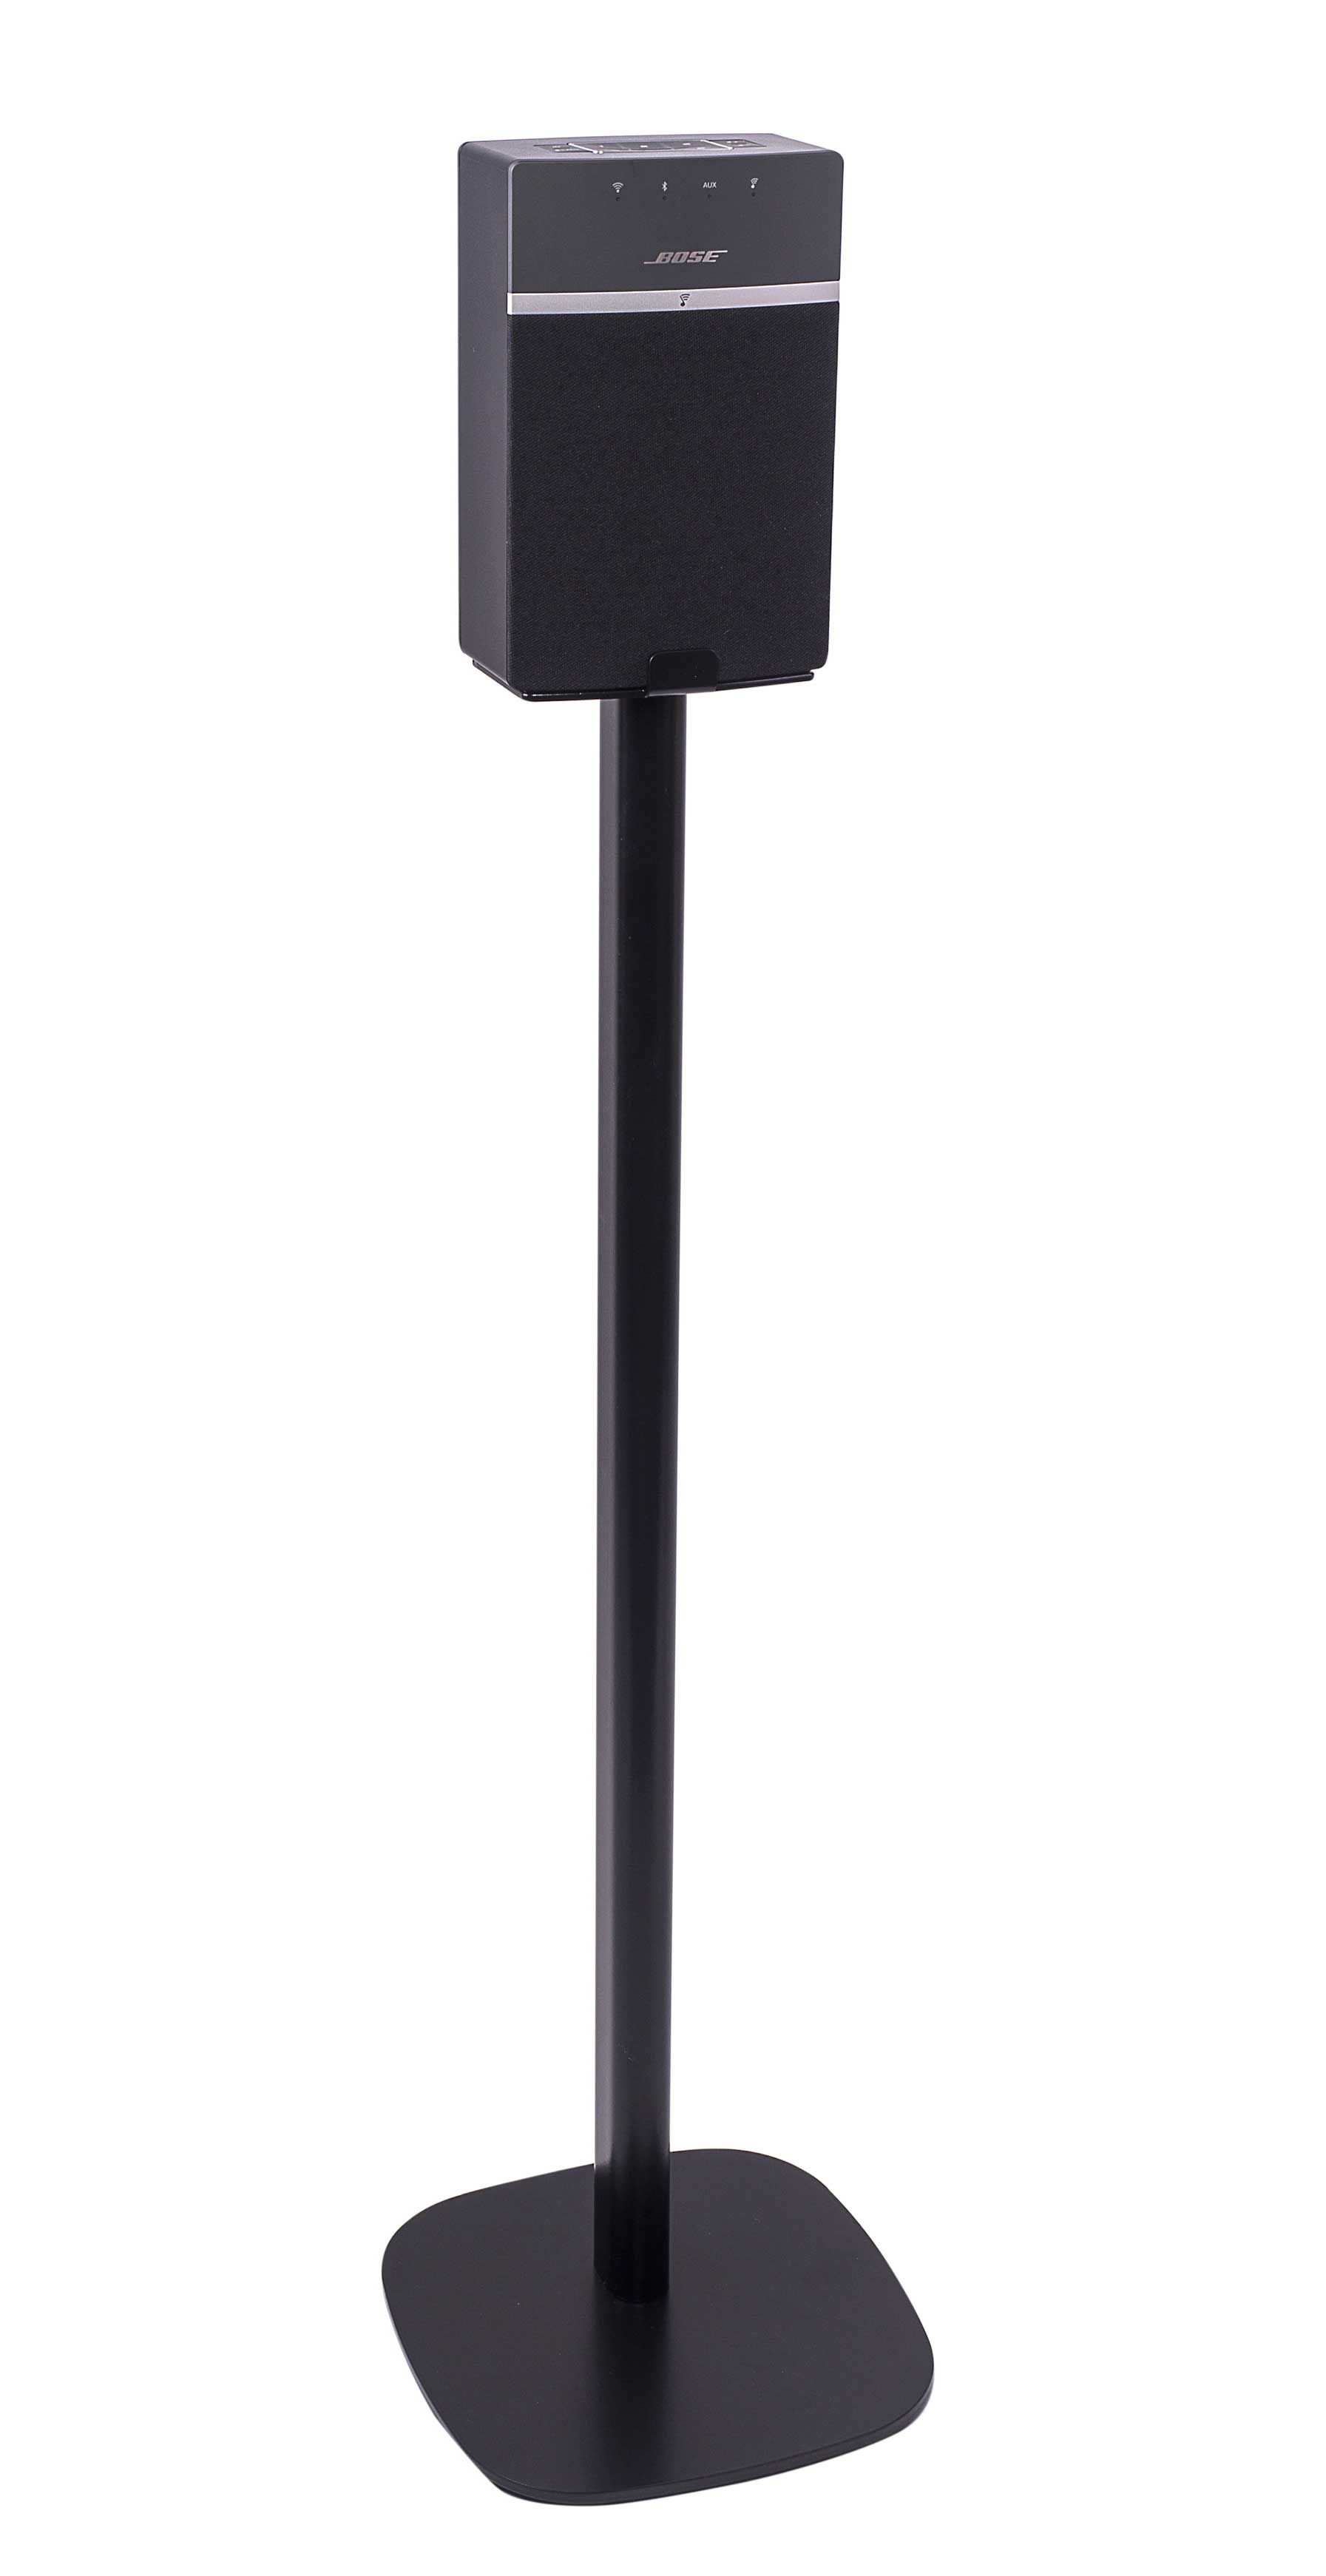 Ik heb een contract gemaakt fluiten Redenaar Vebos floor stand Bose Soundtouch 10 black | The floor stand for Bose  Soundtouch 10